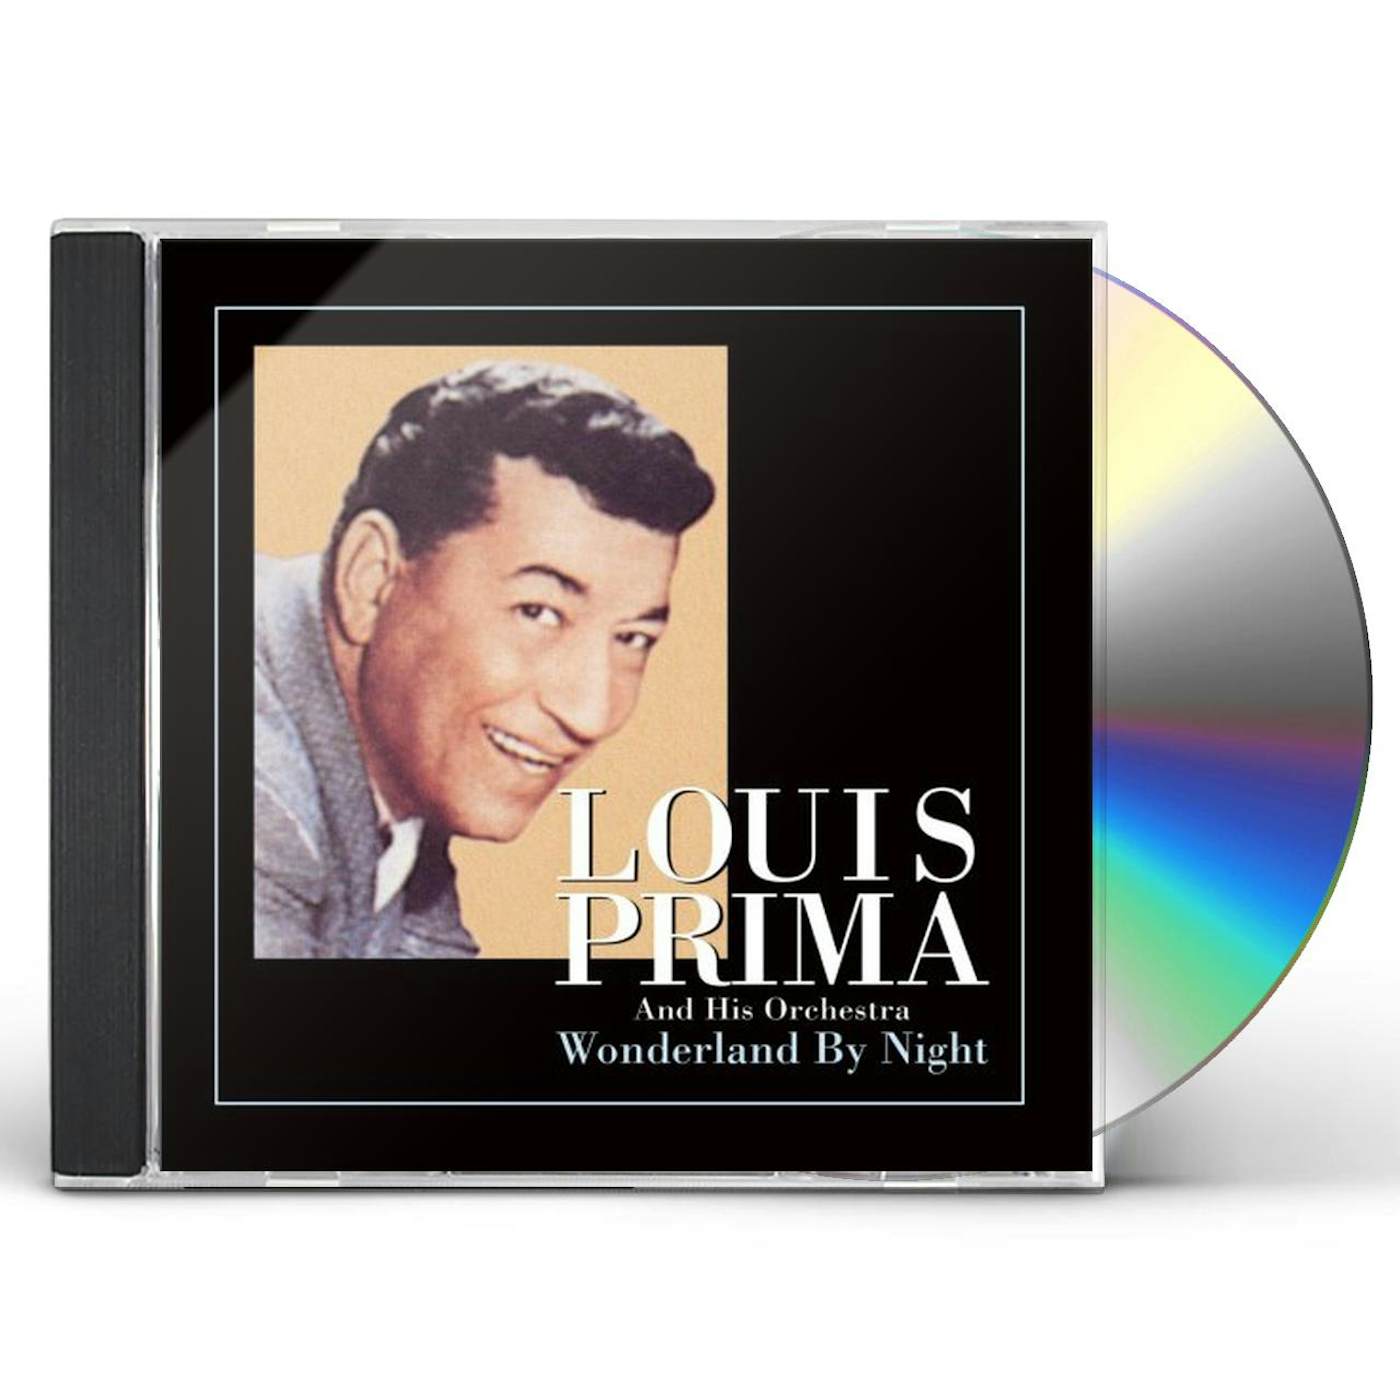 Louis Prima : Wildest Show At Tahoe (LP, Vinyl record album